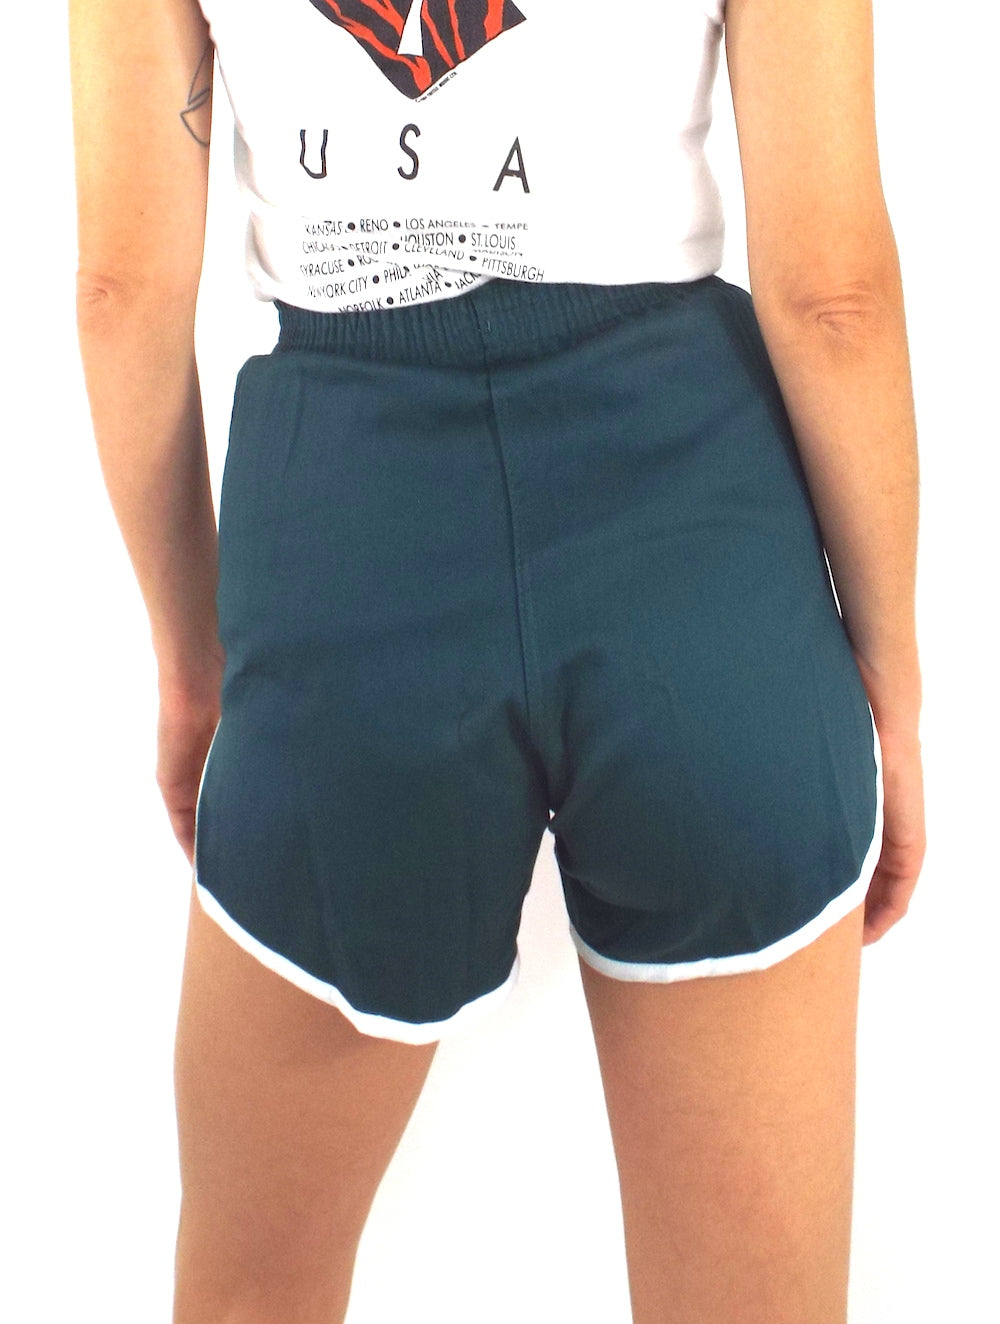 dark green high waisted shorts